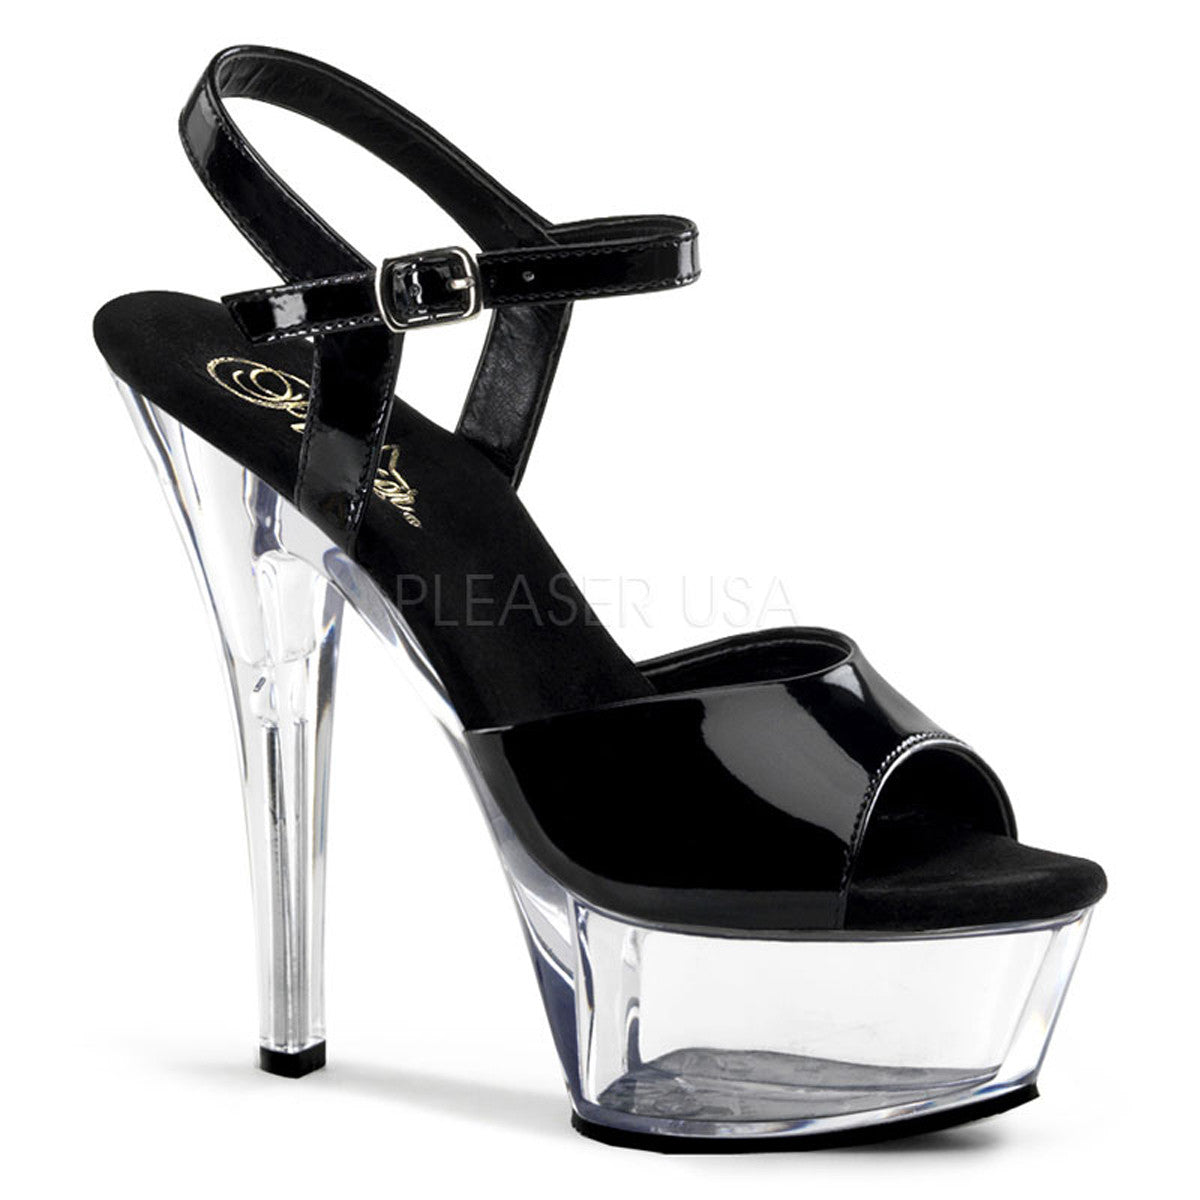 PLEASER KISS-209 Black Pat-Clear Platform Sandals - Shoecup.com